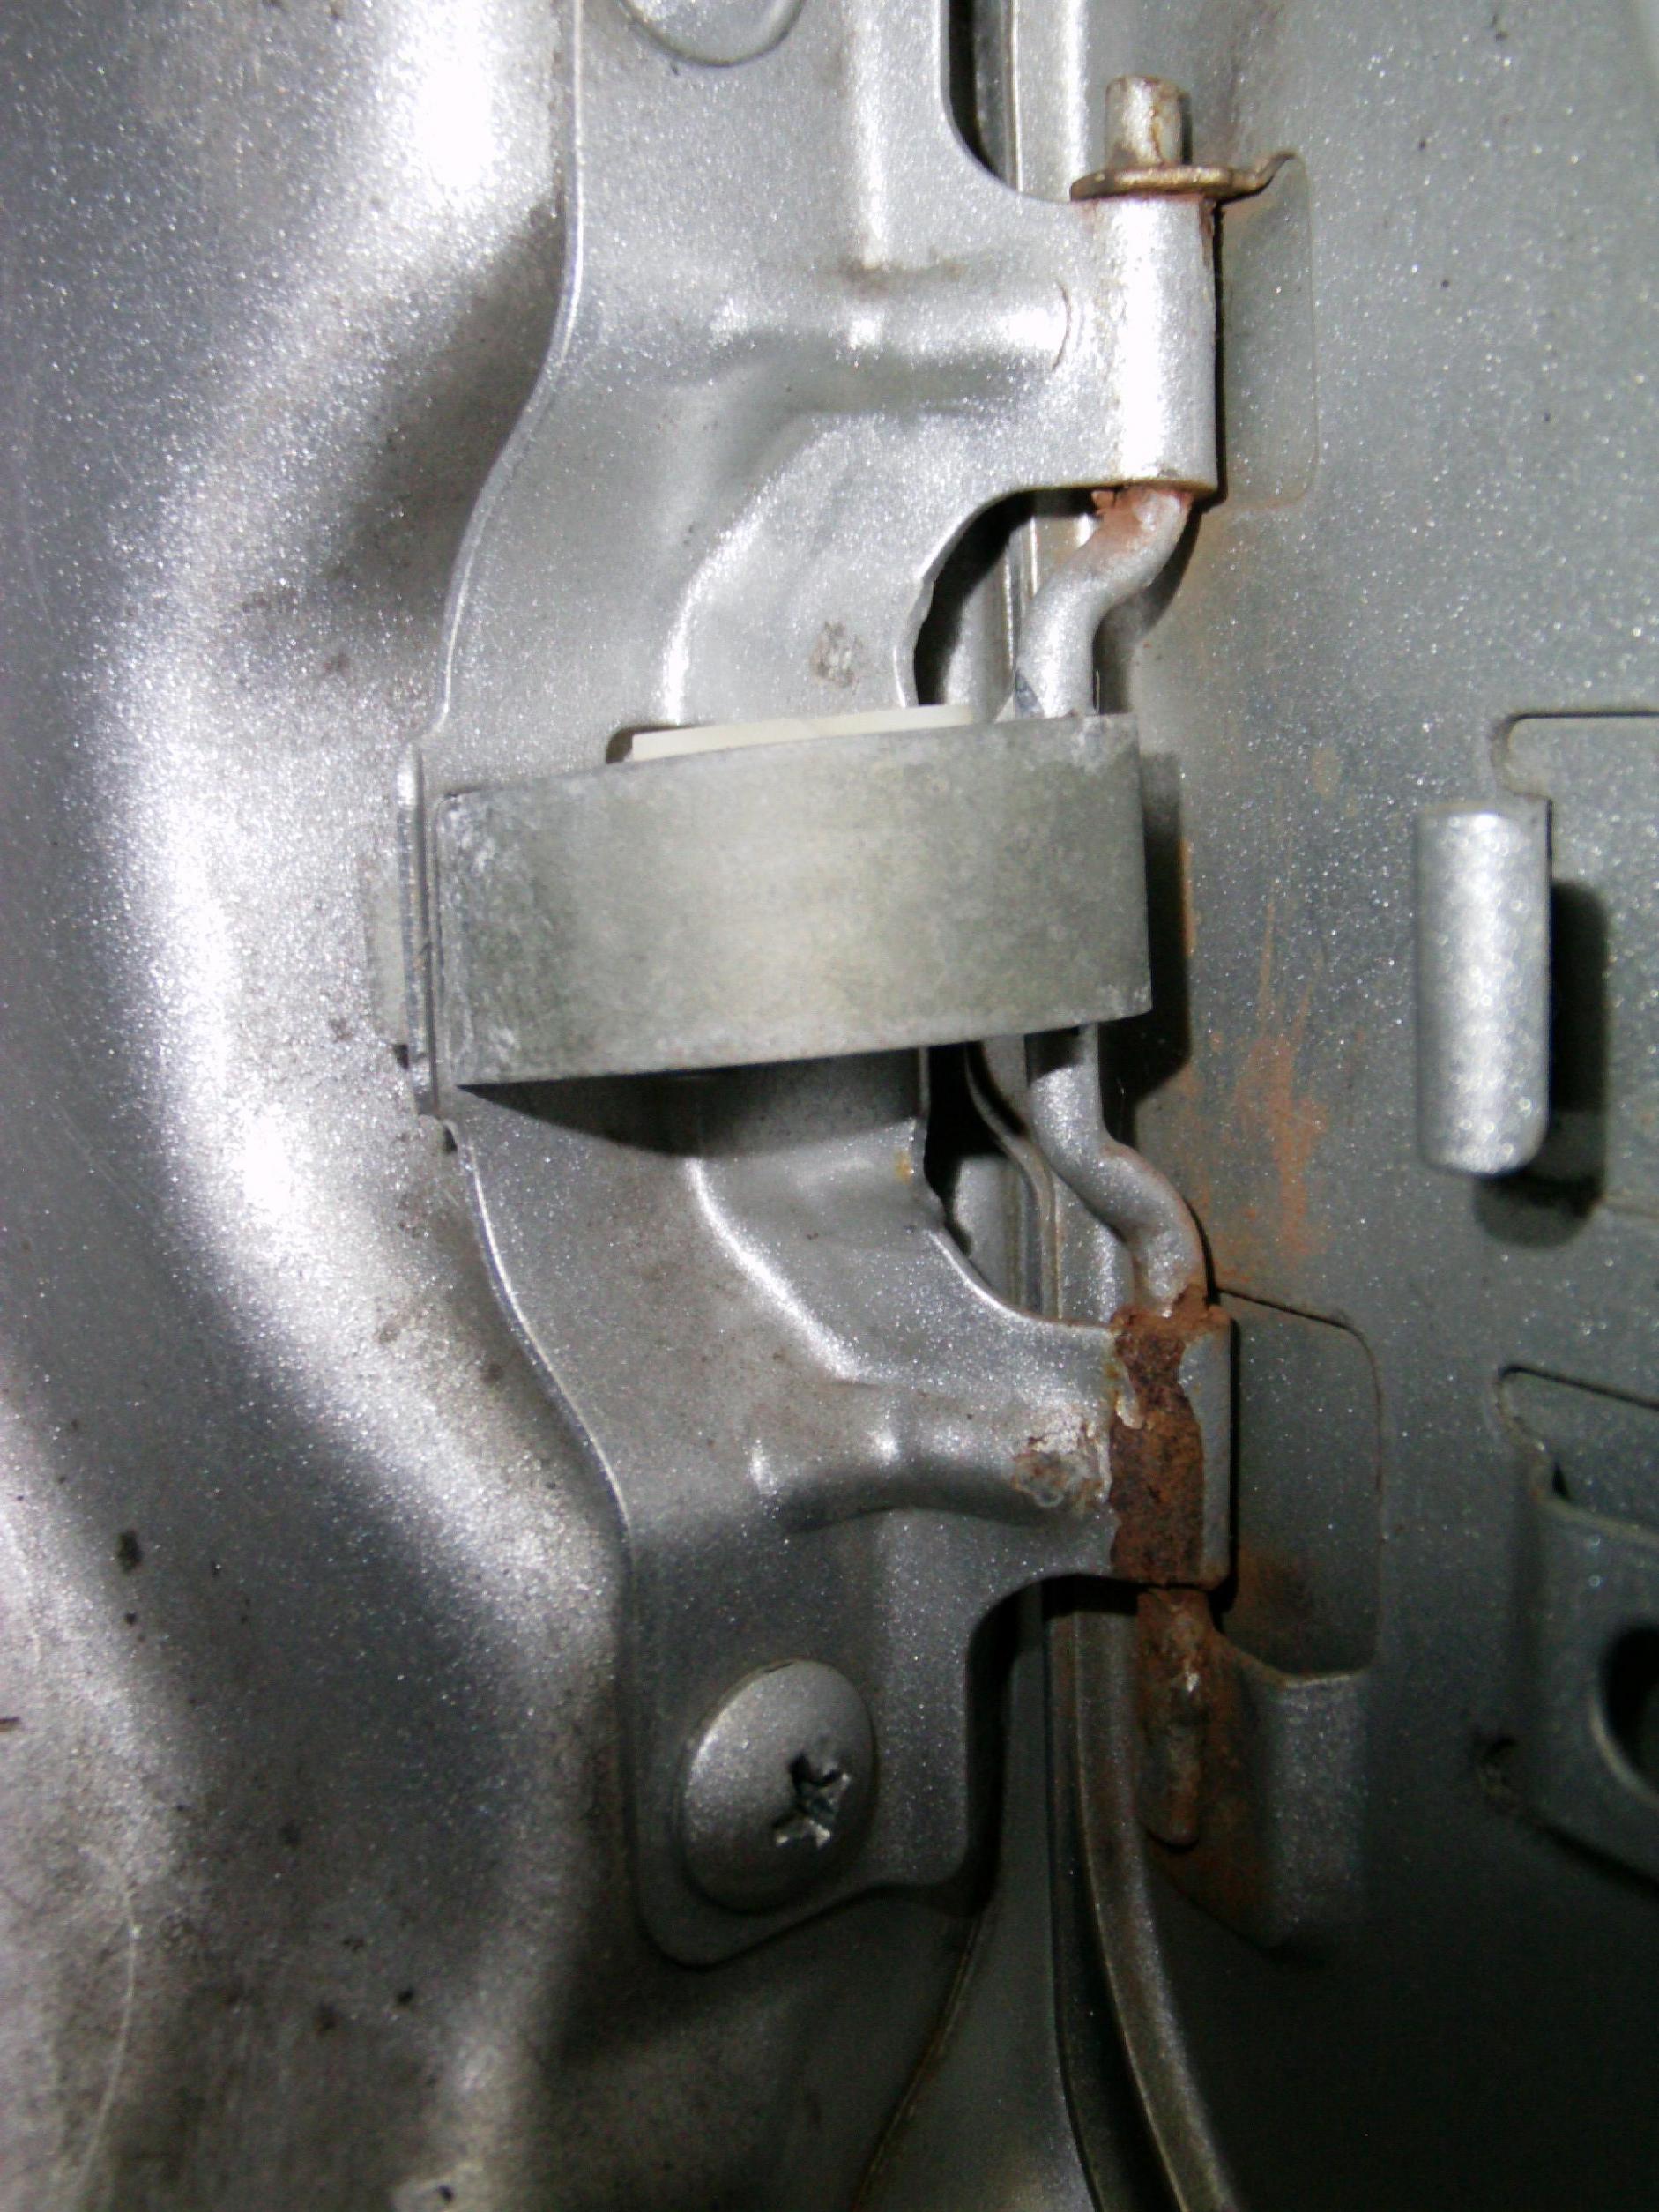 Fuel door spring